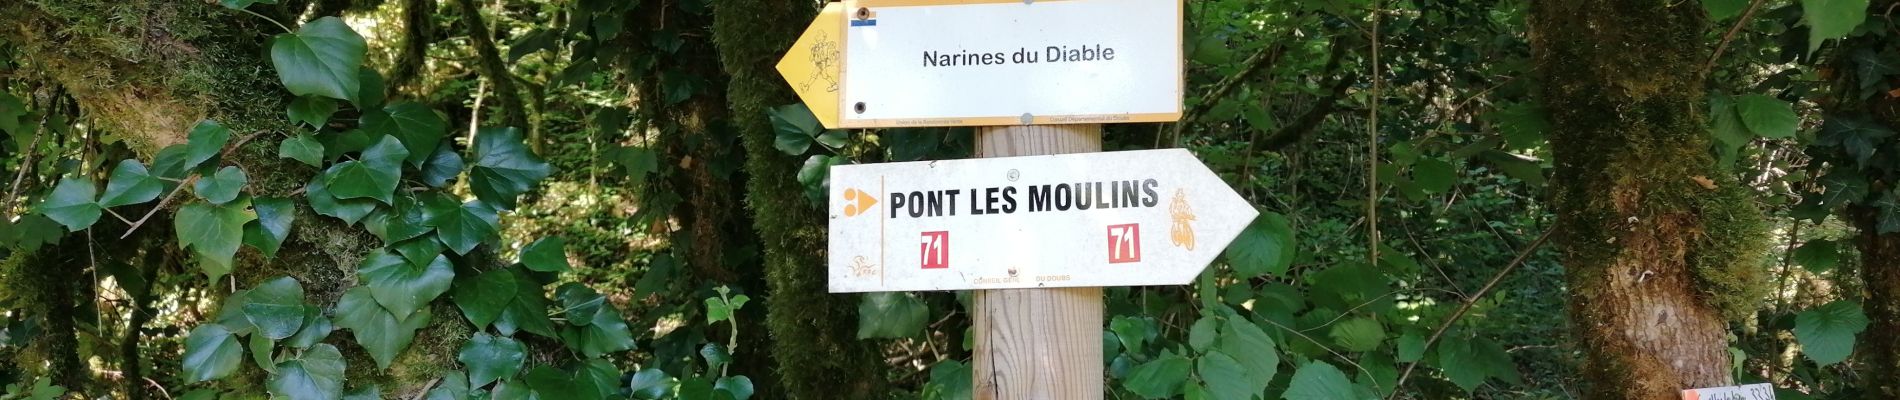 Tour Wandern Pont-les-Moulins - 2020 07 12 Guillon, les narines du diable - Photo